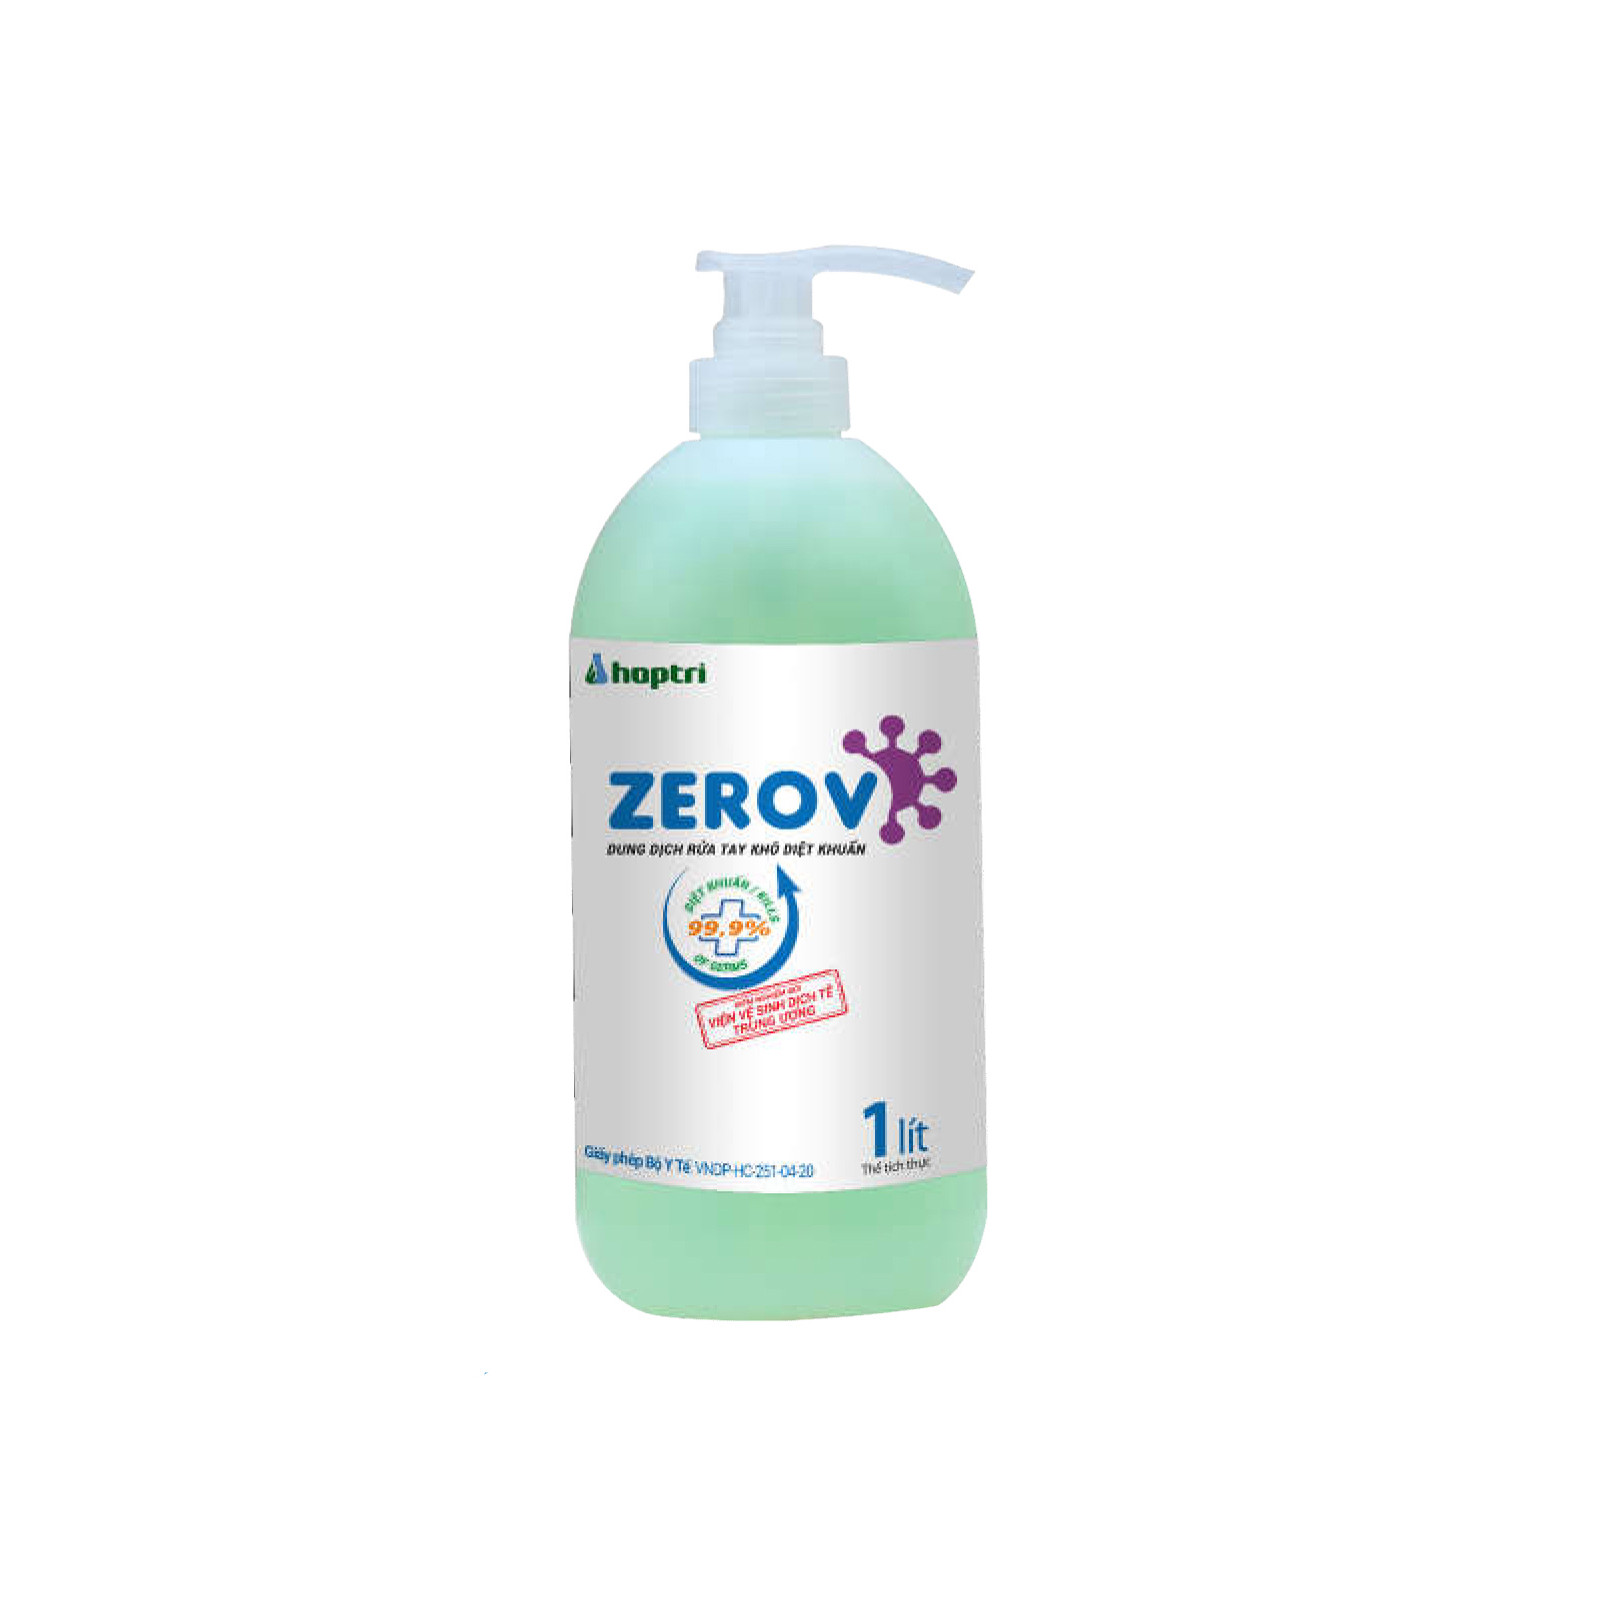 Dung dịch rửa tay khô Diệt khuẩn ZeroV